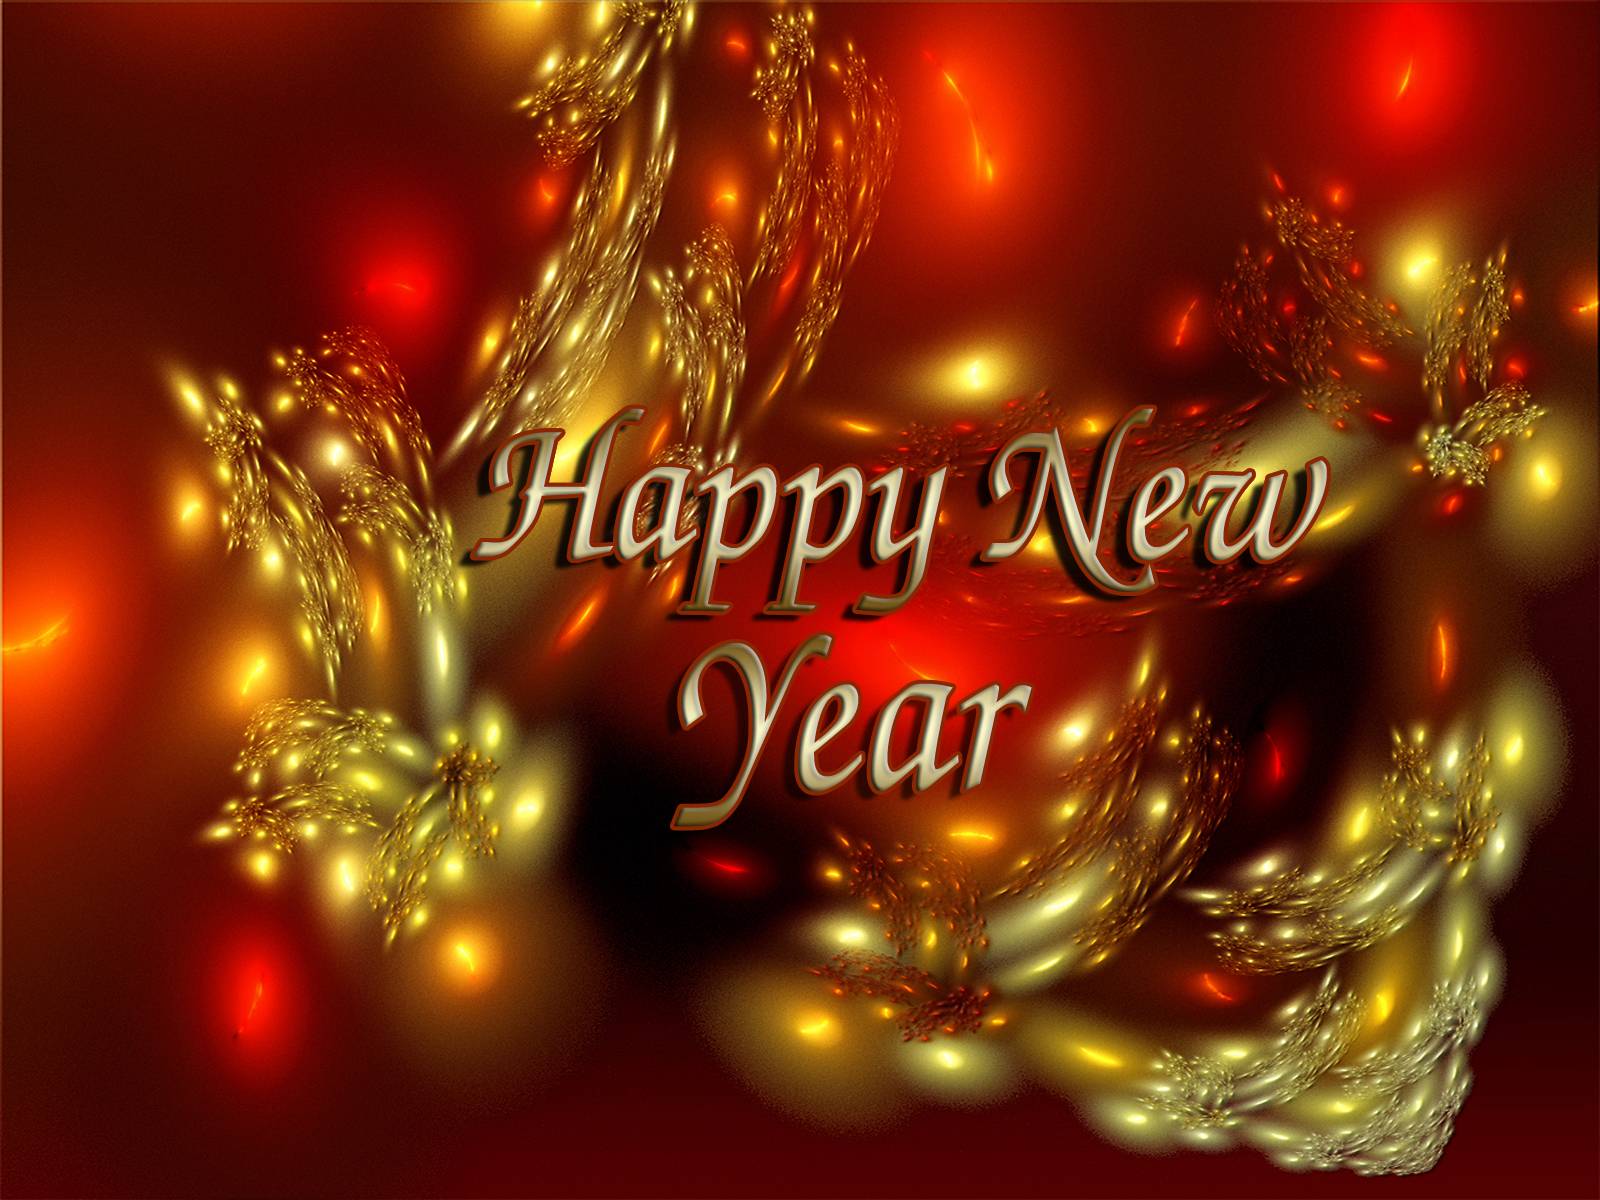 glenn denny: New Year Background